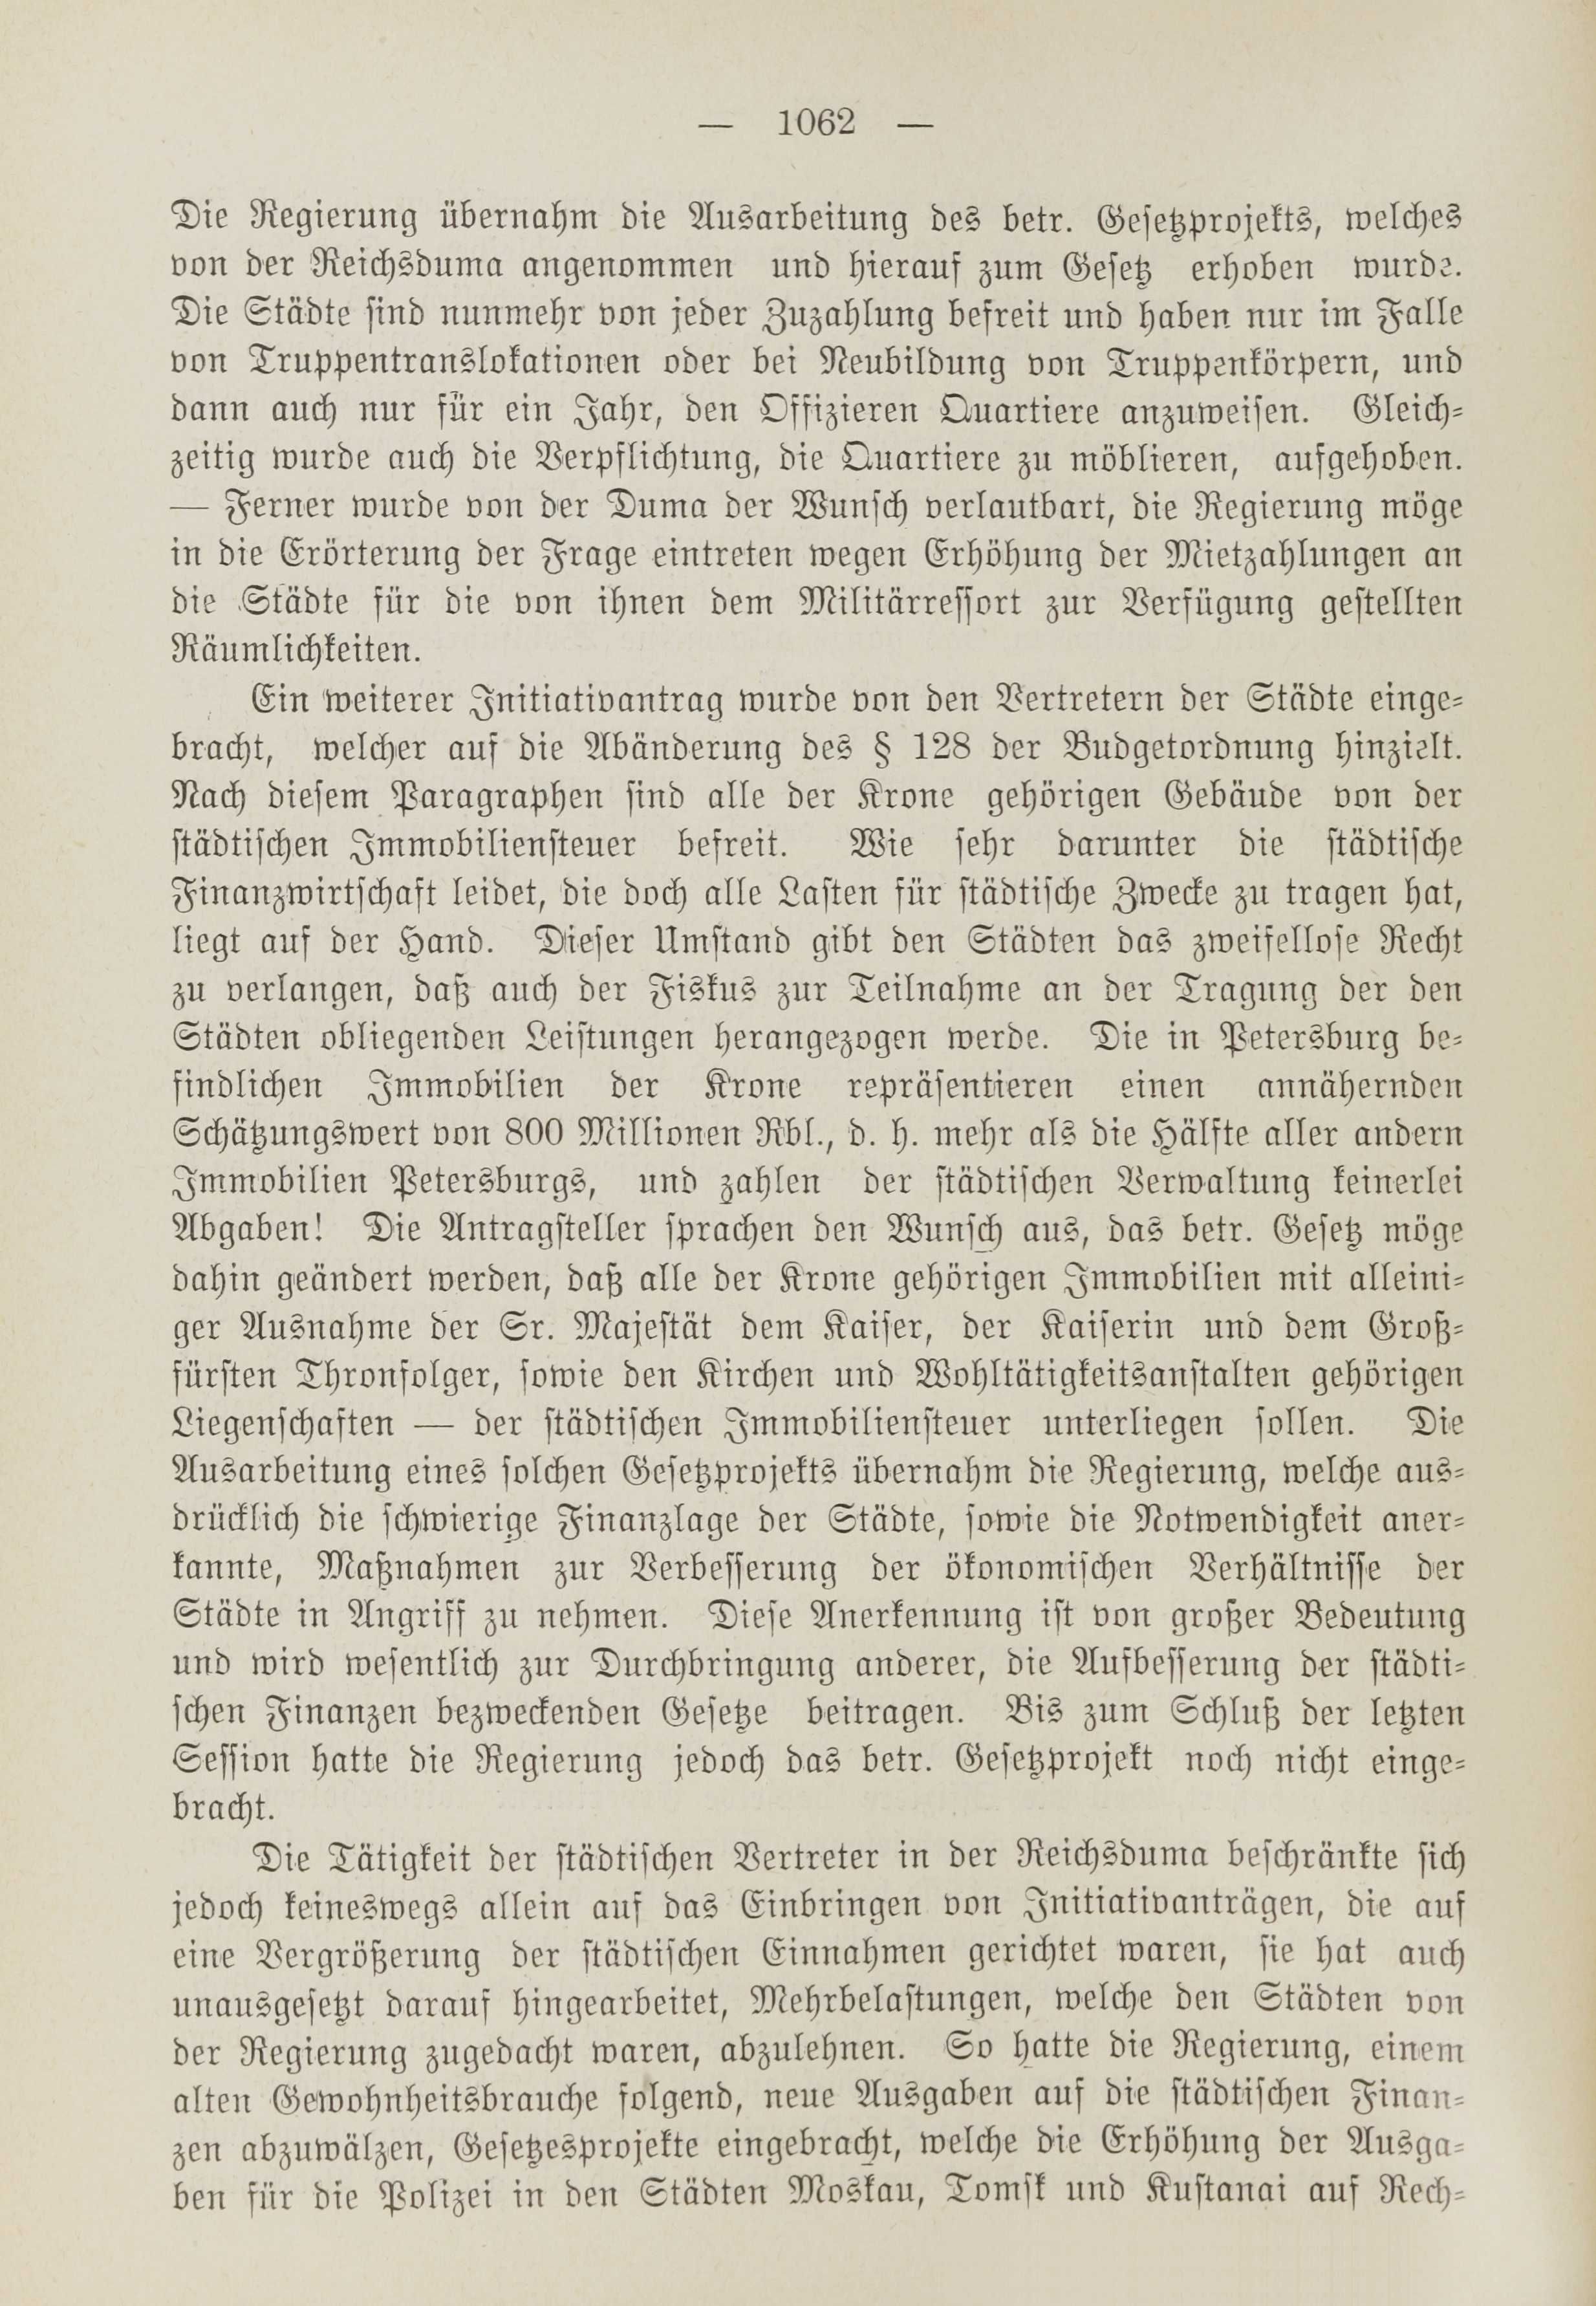 Deutsche Monatsschrift für Russland [1] (1912) | 1070. (1062) Haupttext